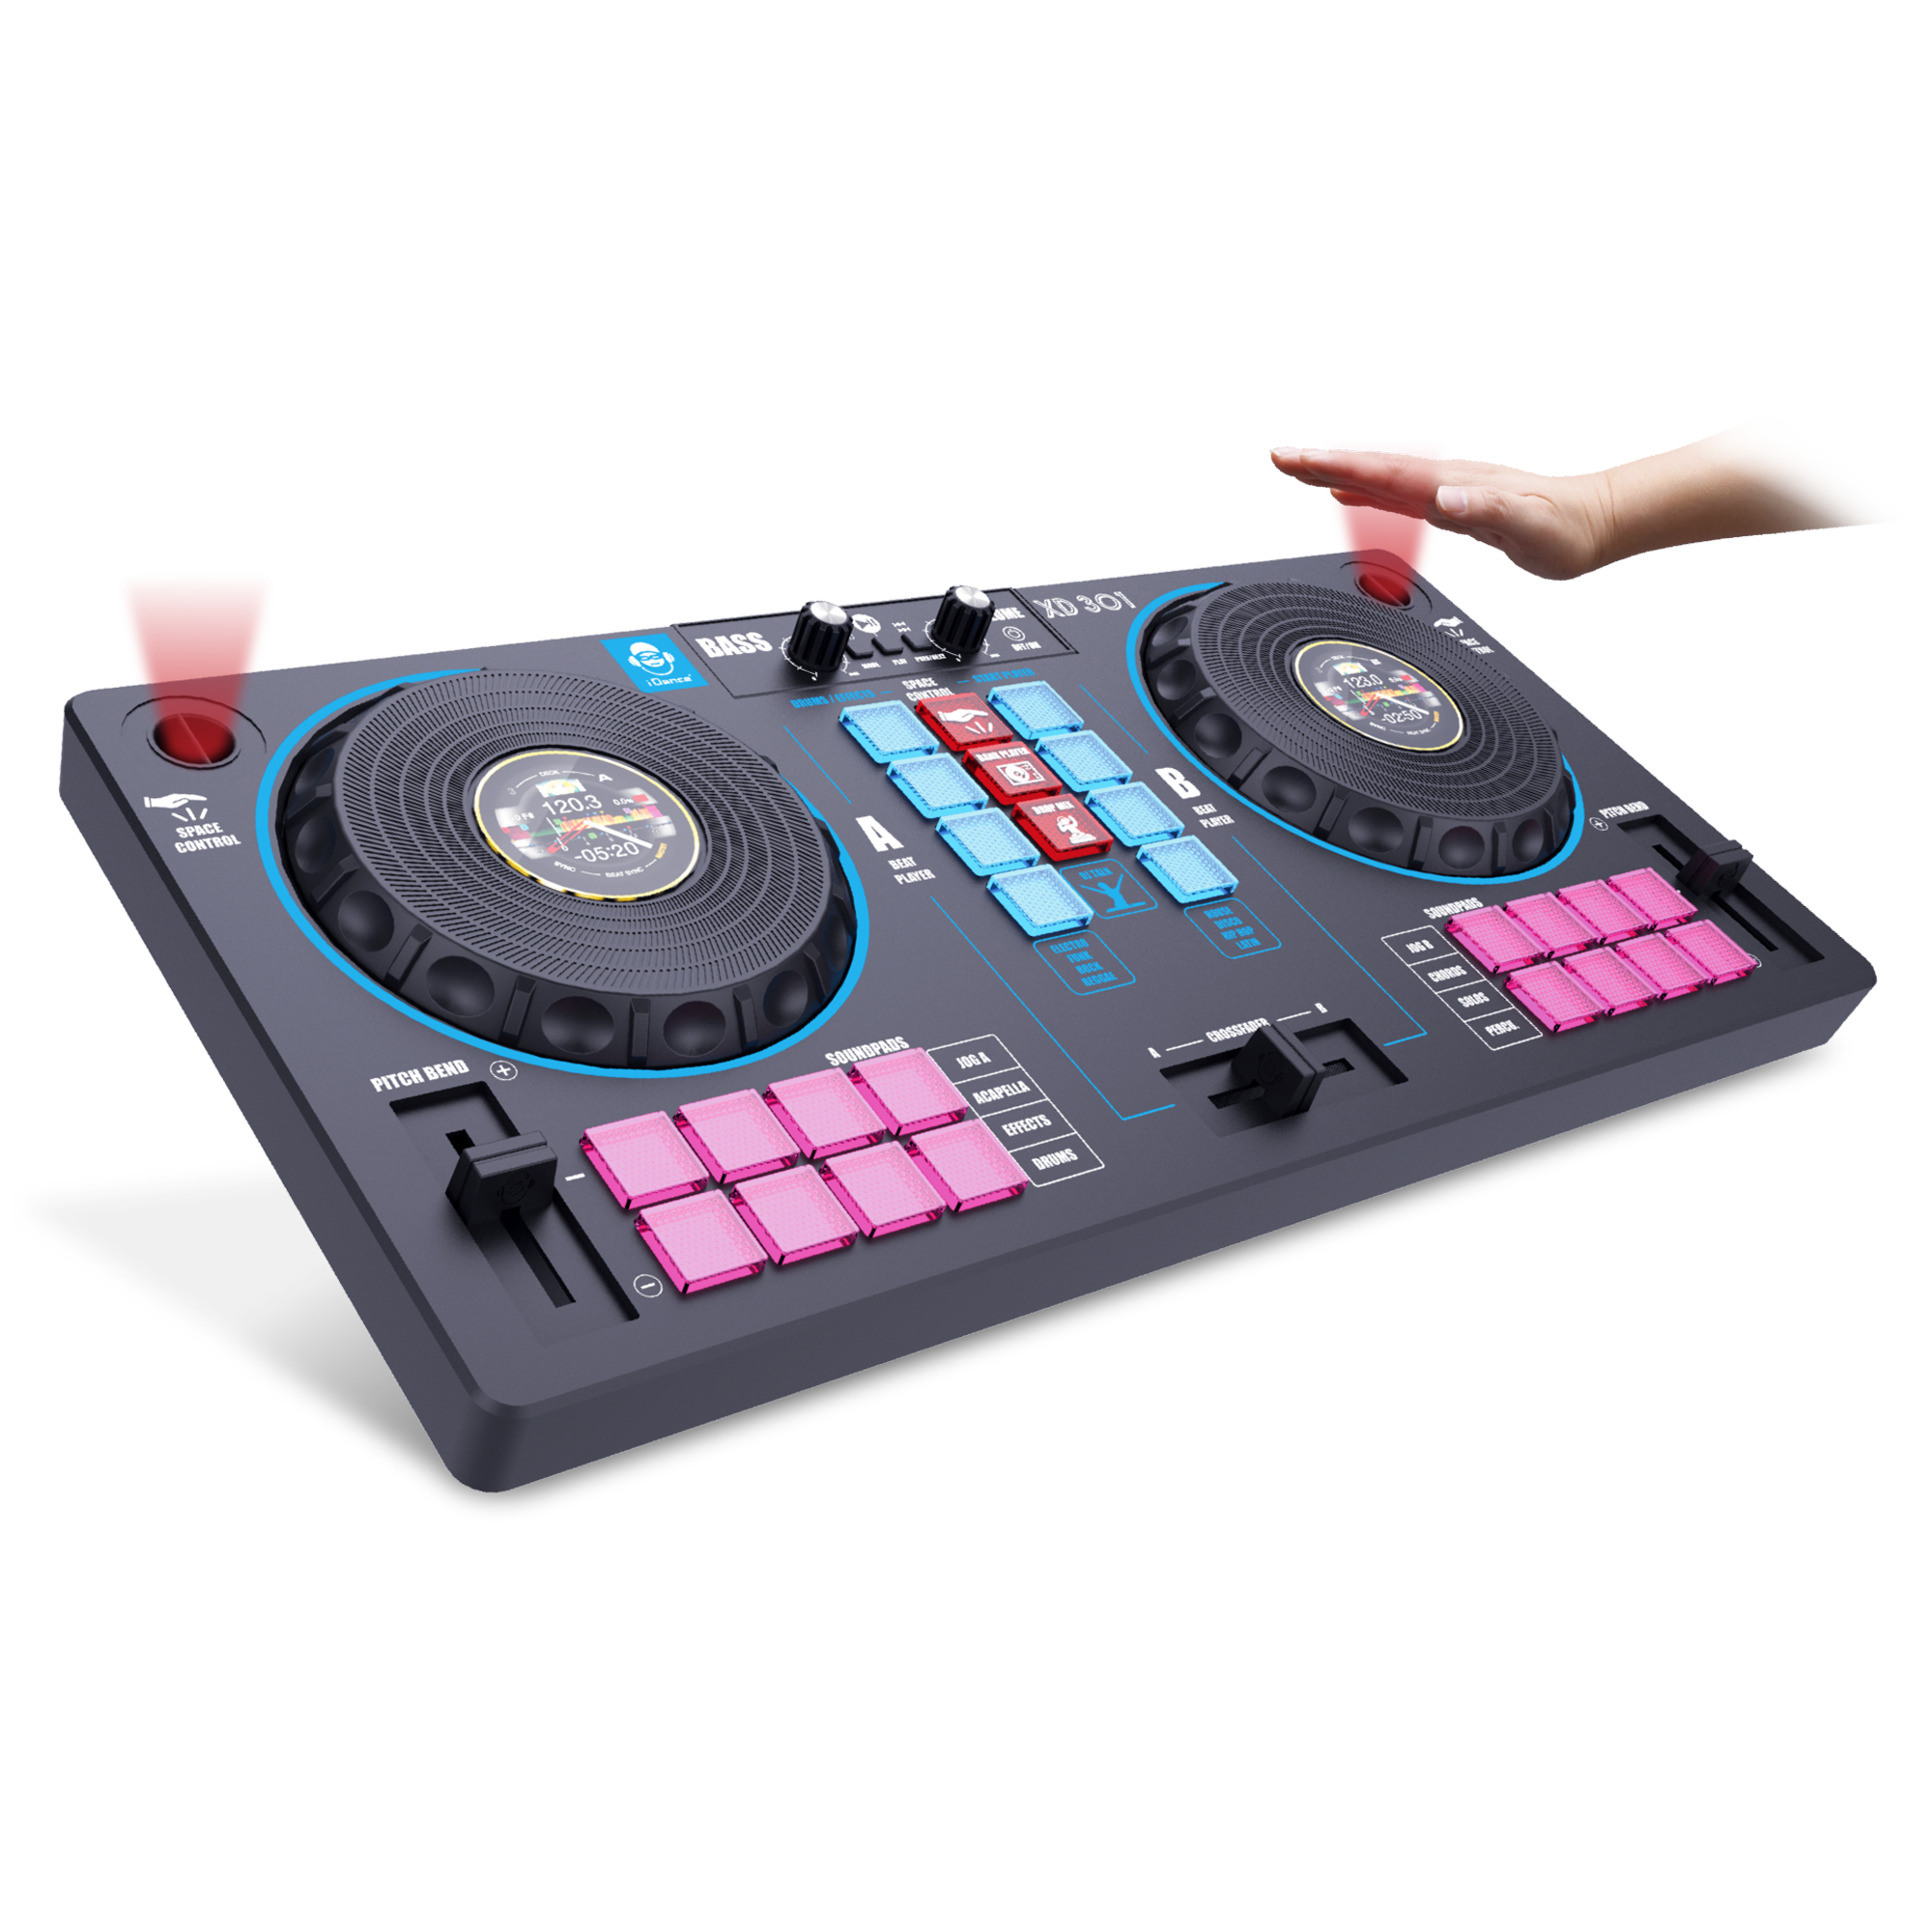 Station mixer 14in1 - diventa il re della festa con la console dj: mixer e remixer con 16 loop audio, collegamento a dispositivi, 2 giradischi con scratch, bass booster e effetti sonori - goditi un'esperienza di mixaggio unica! - SUPERSTAR